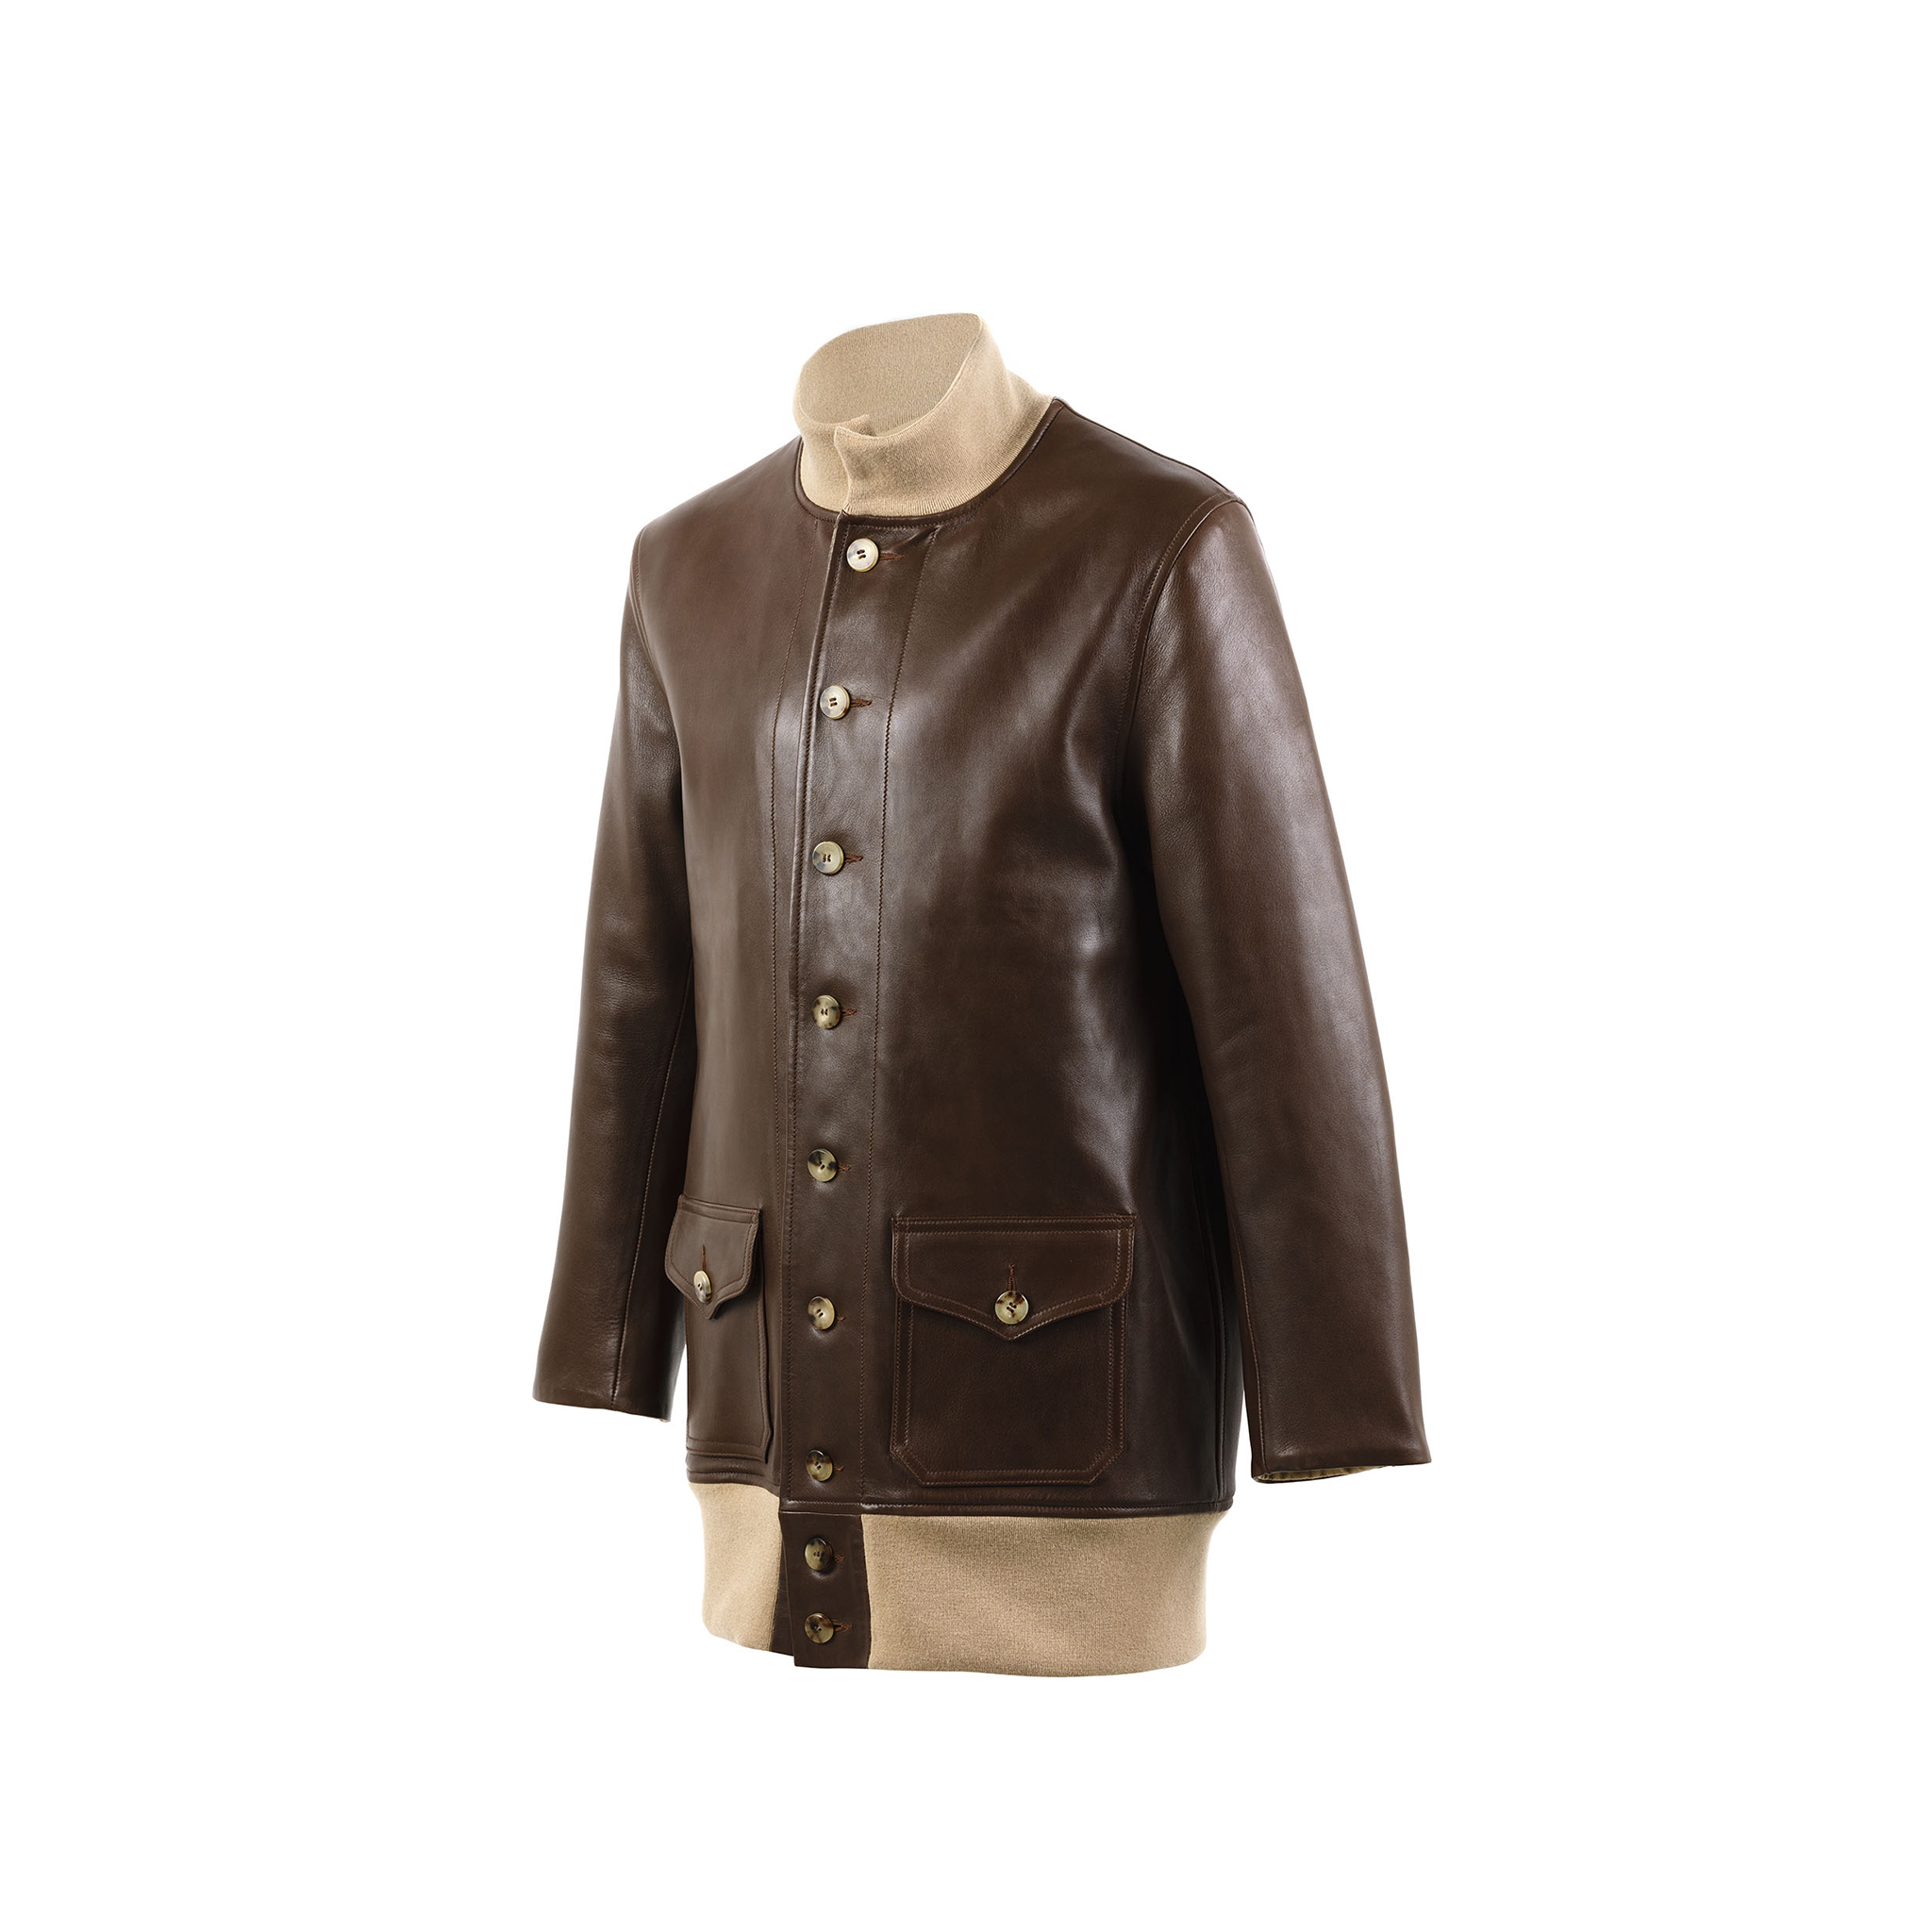 Manteau A1 3/4 - Vintage - Cuir glacé - Couleur brun